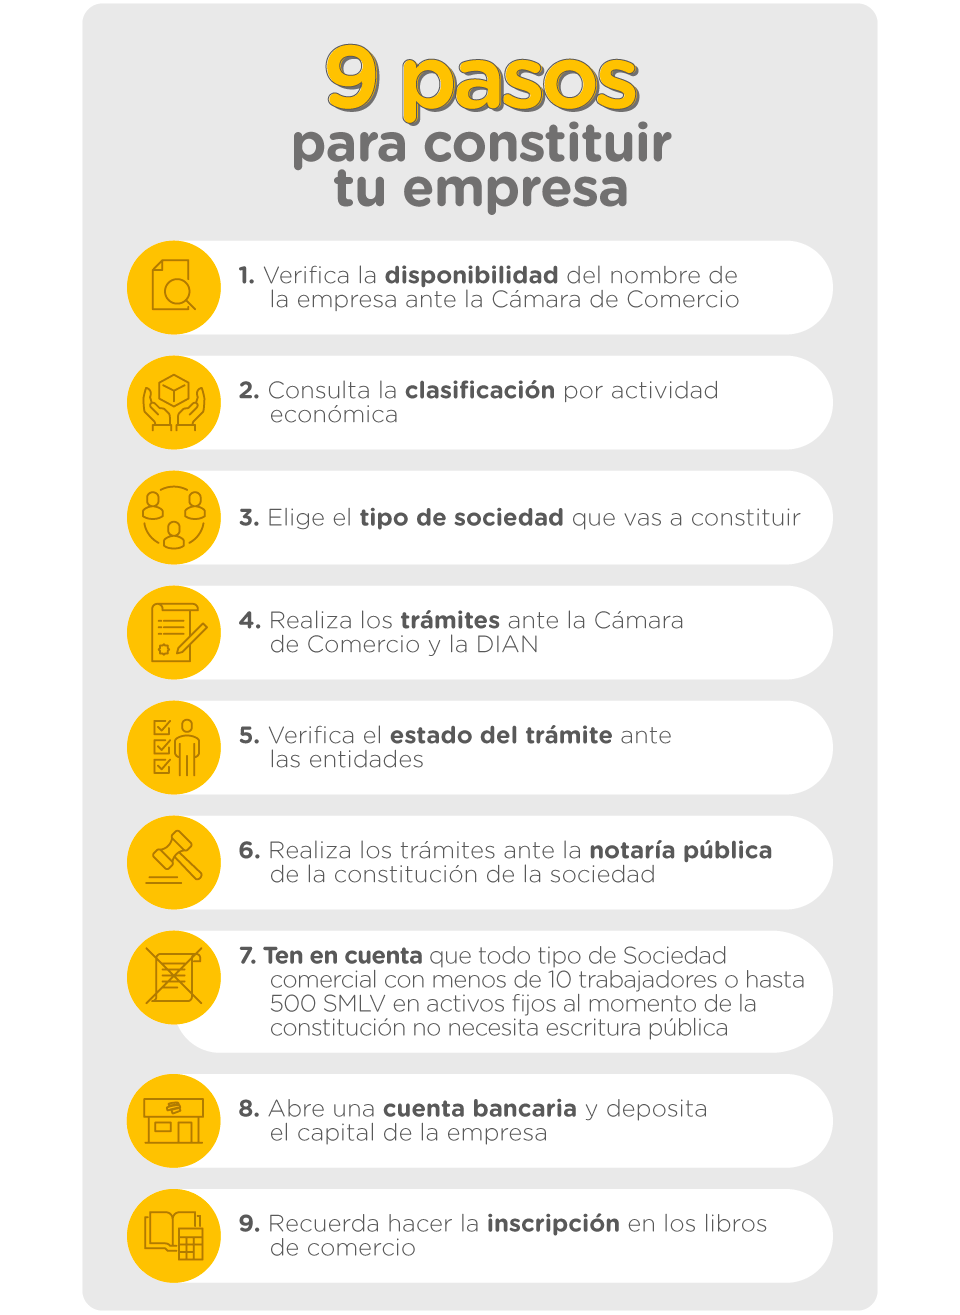 9-pasos-para-constituir-tu-negocio-en colombia